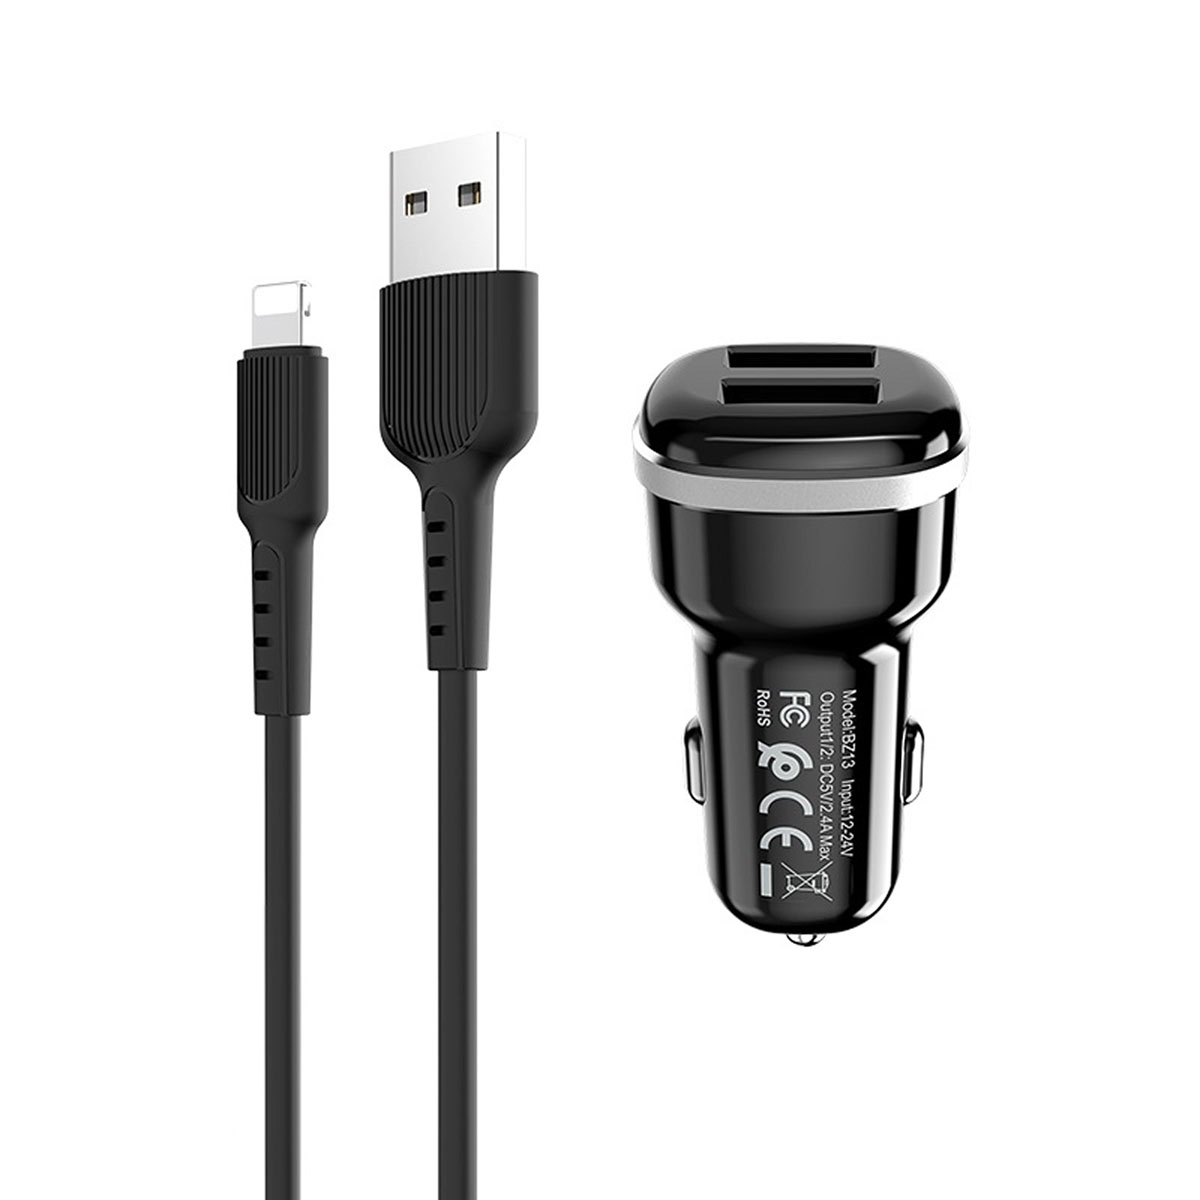 BOROFONE BZ13 Extreme АЗУ (автомобильное зарядное устройство) с двумя USB портами, набор с кабелем APPLE Lightning 8-pin, цвет черный.